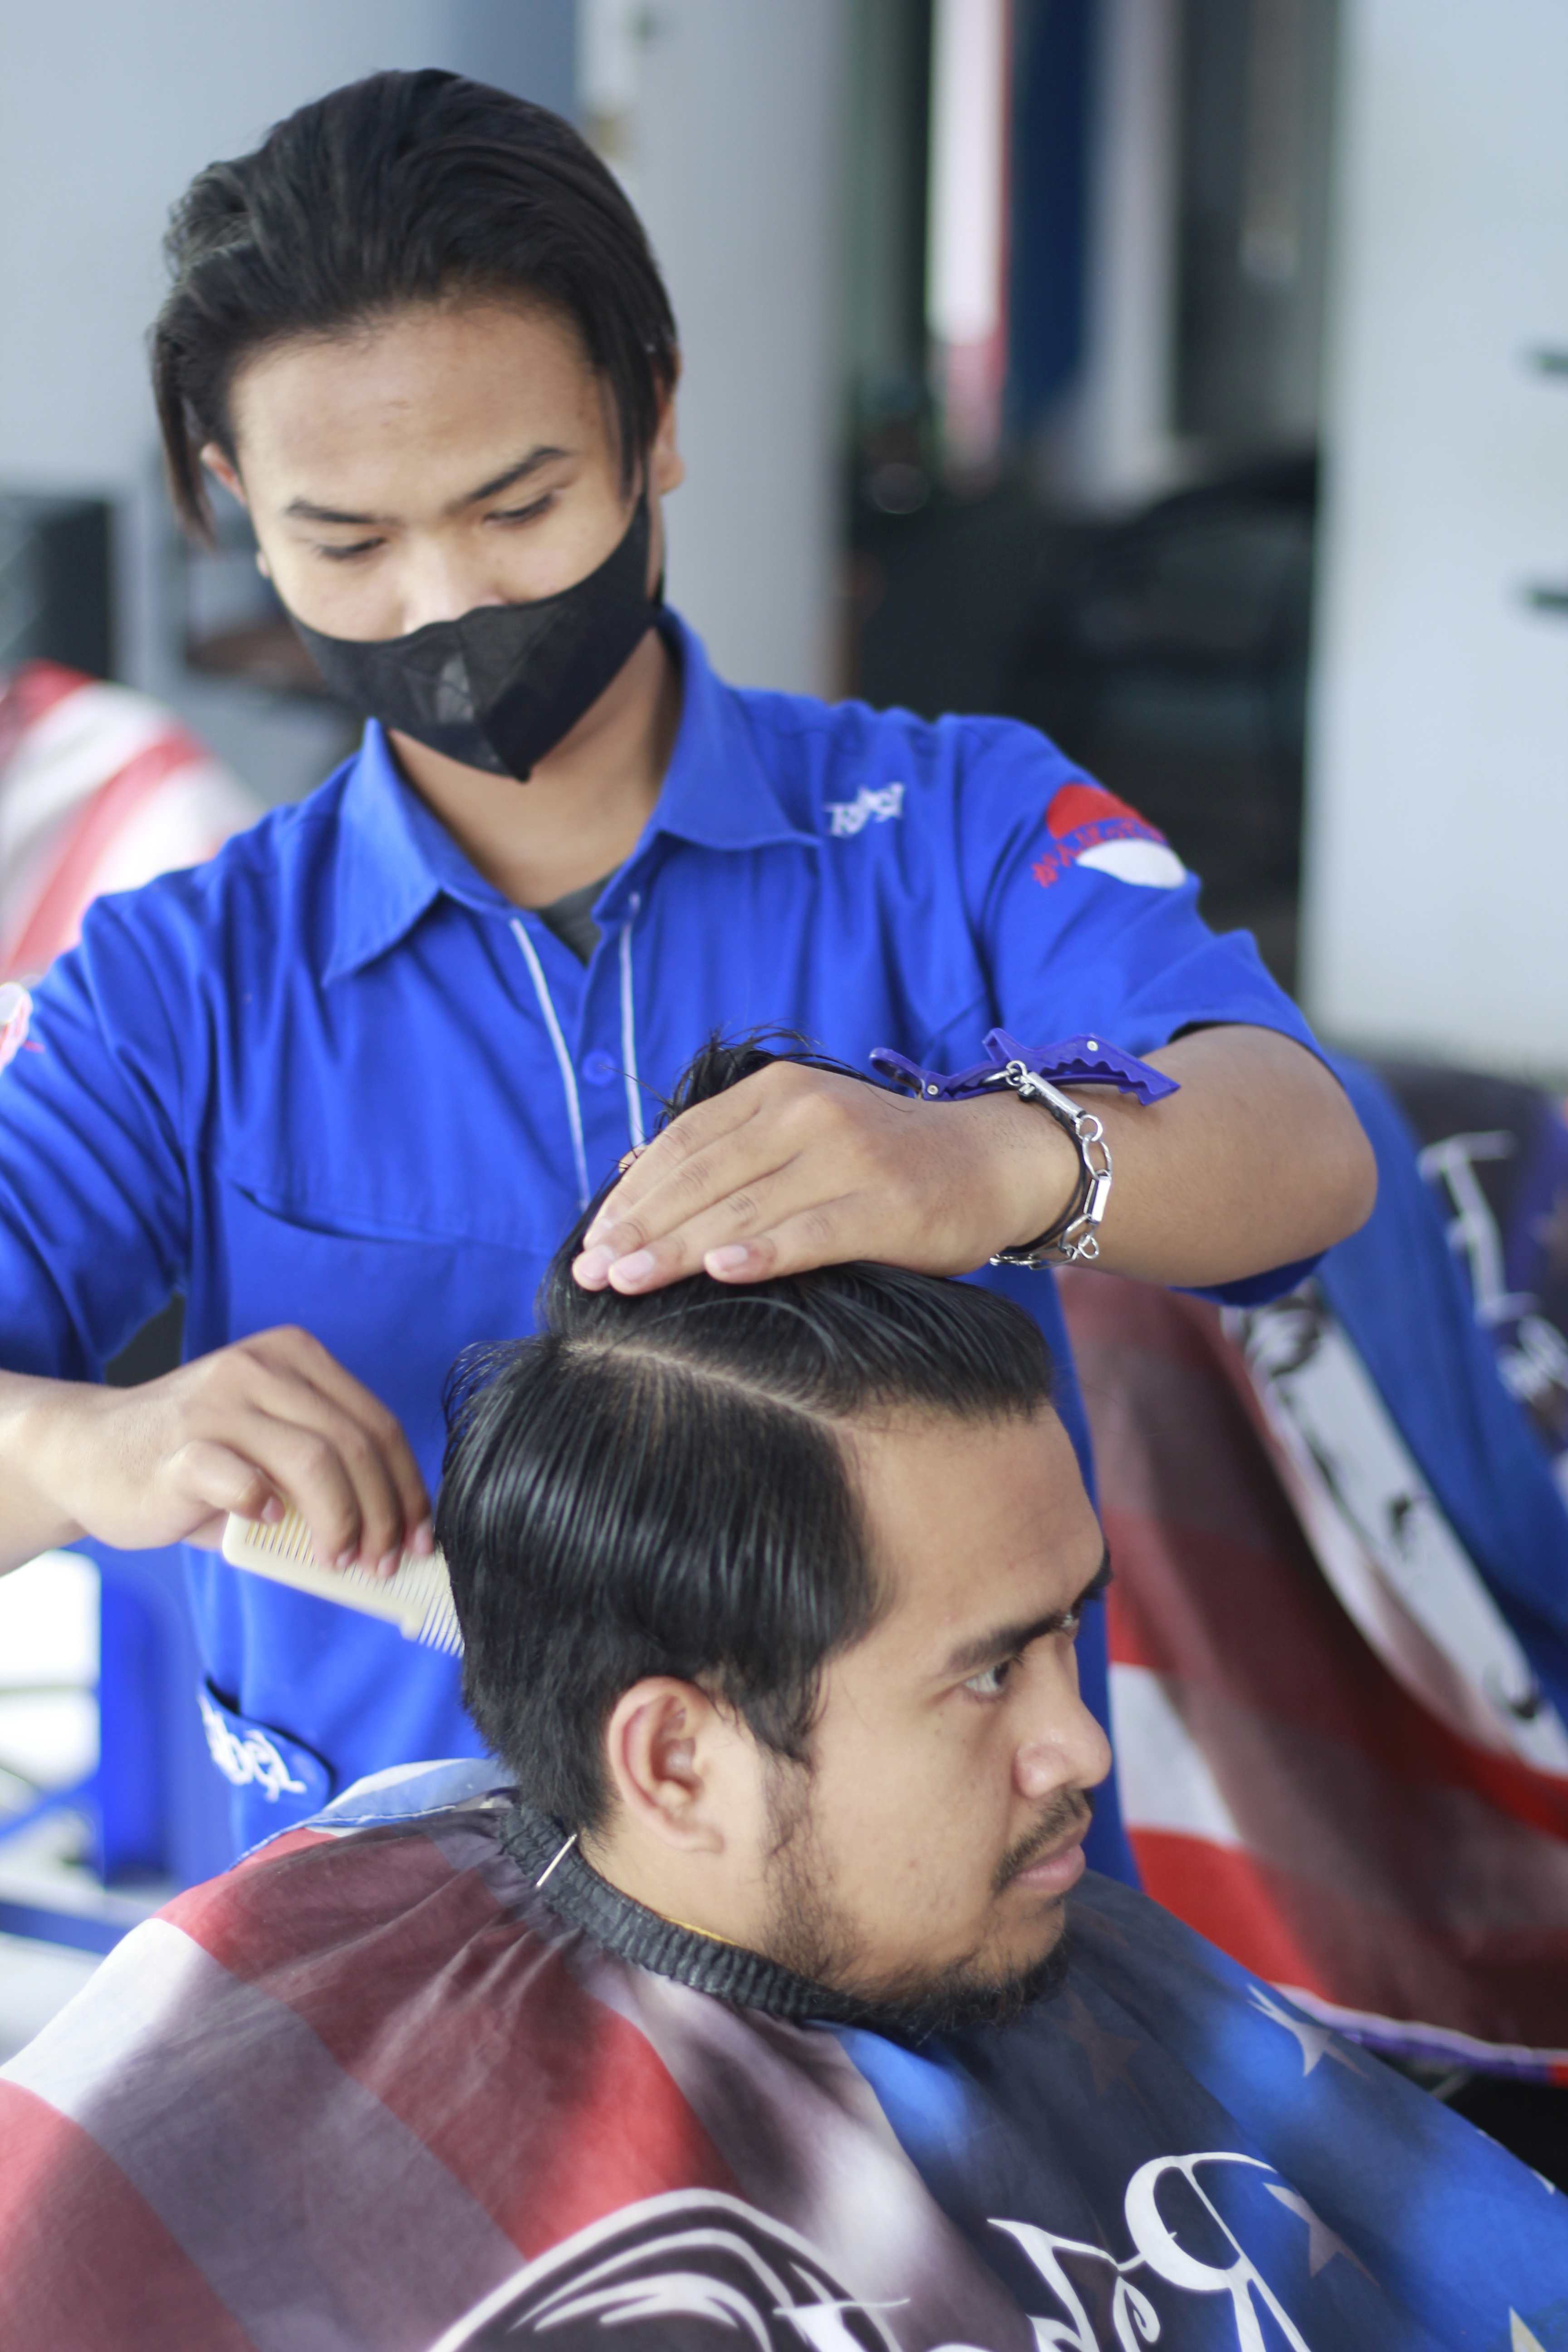 Harga Barbershop Di Kelurahan Mojolangu Profesional